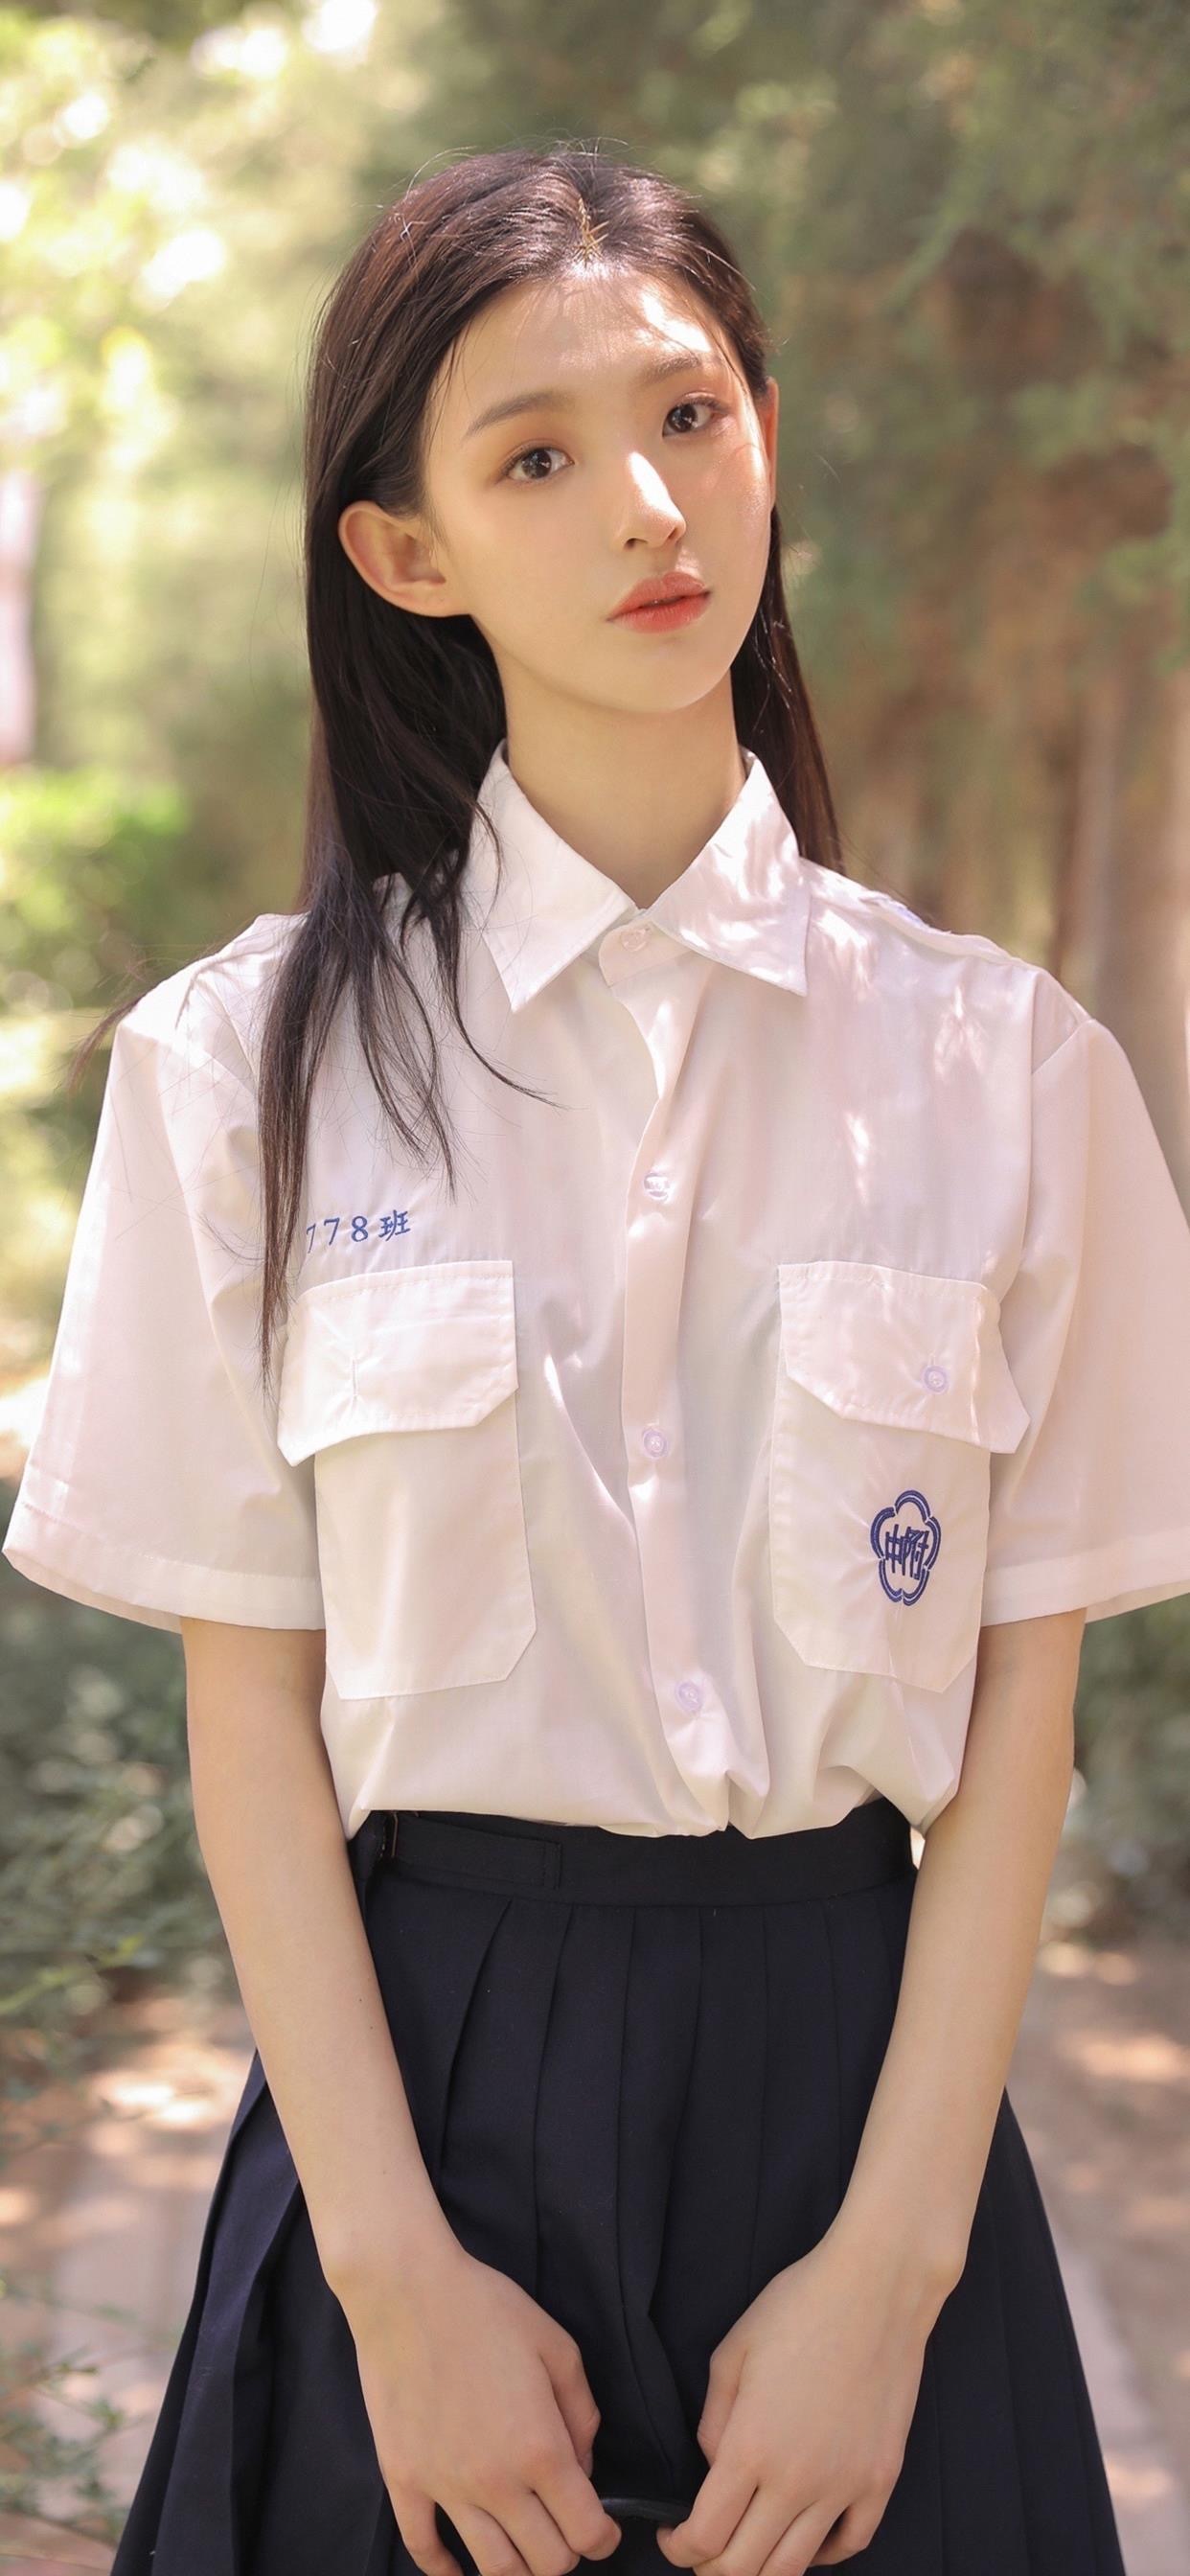 可爱的韩国美女学生妹图片写真_高清学院制服美女图片写真_三千图片网